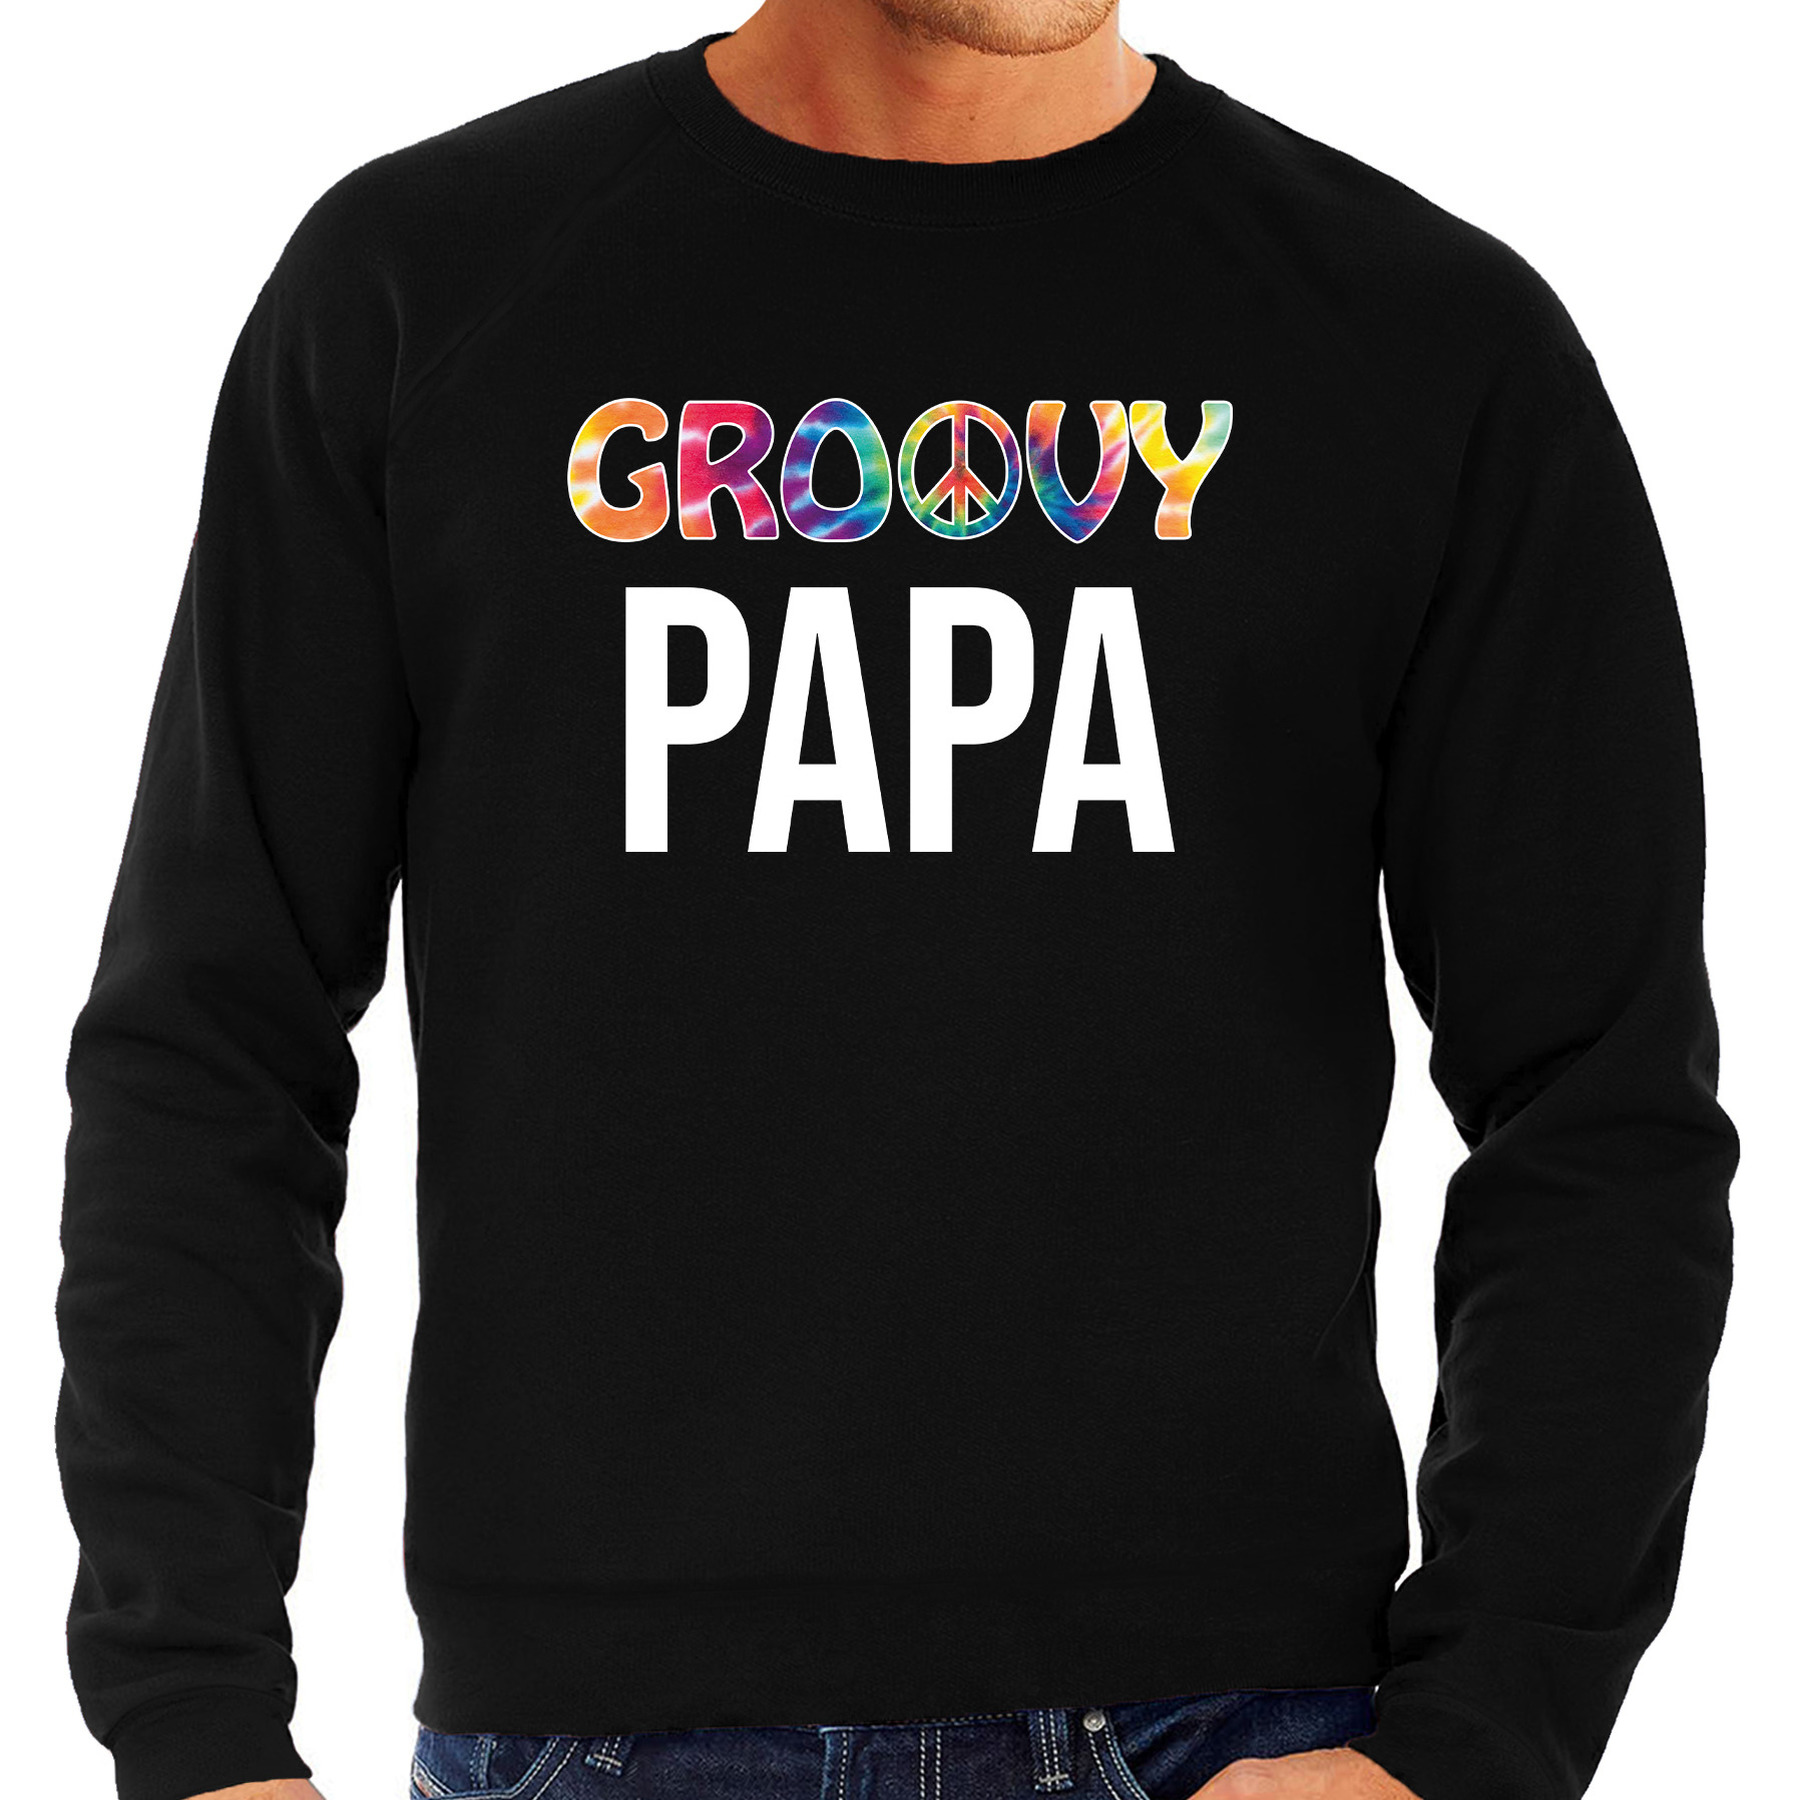 Groovy papa sweater - trui zwart voor heren - vaderdag cadeau truien papa